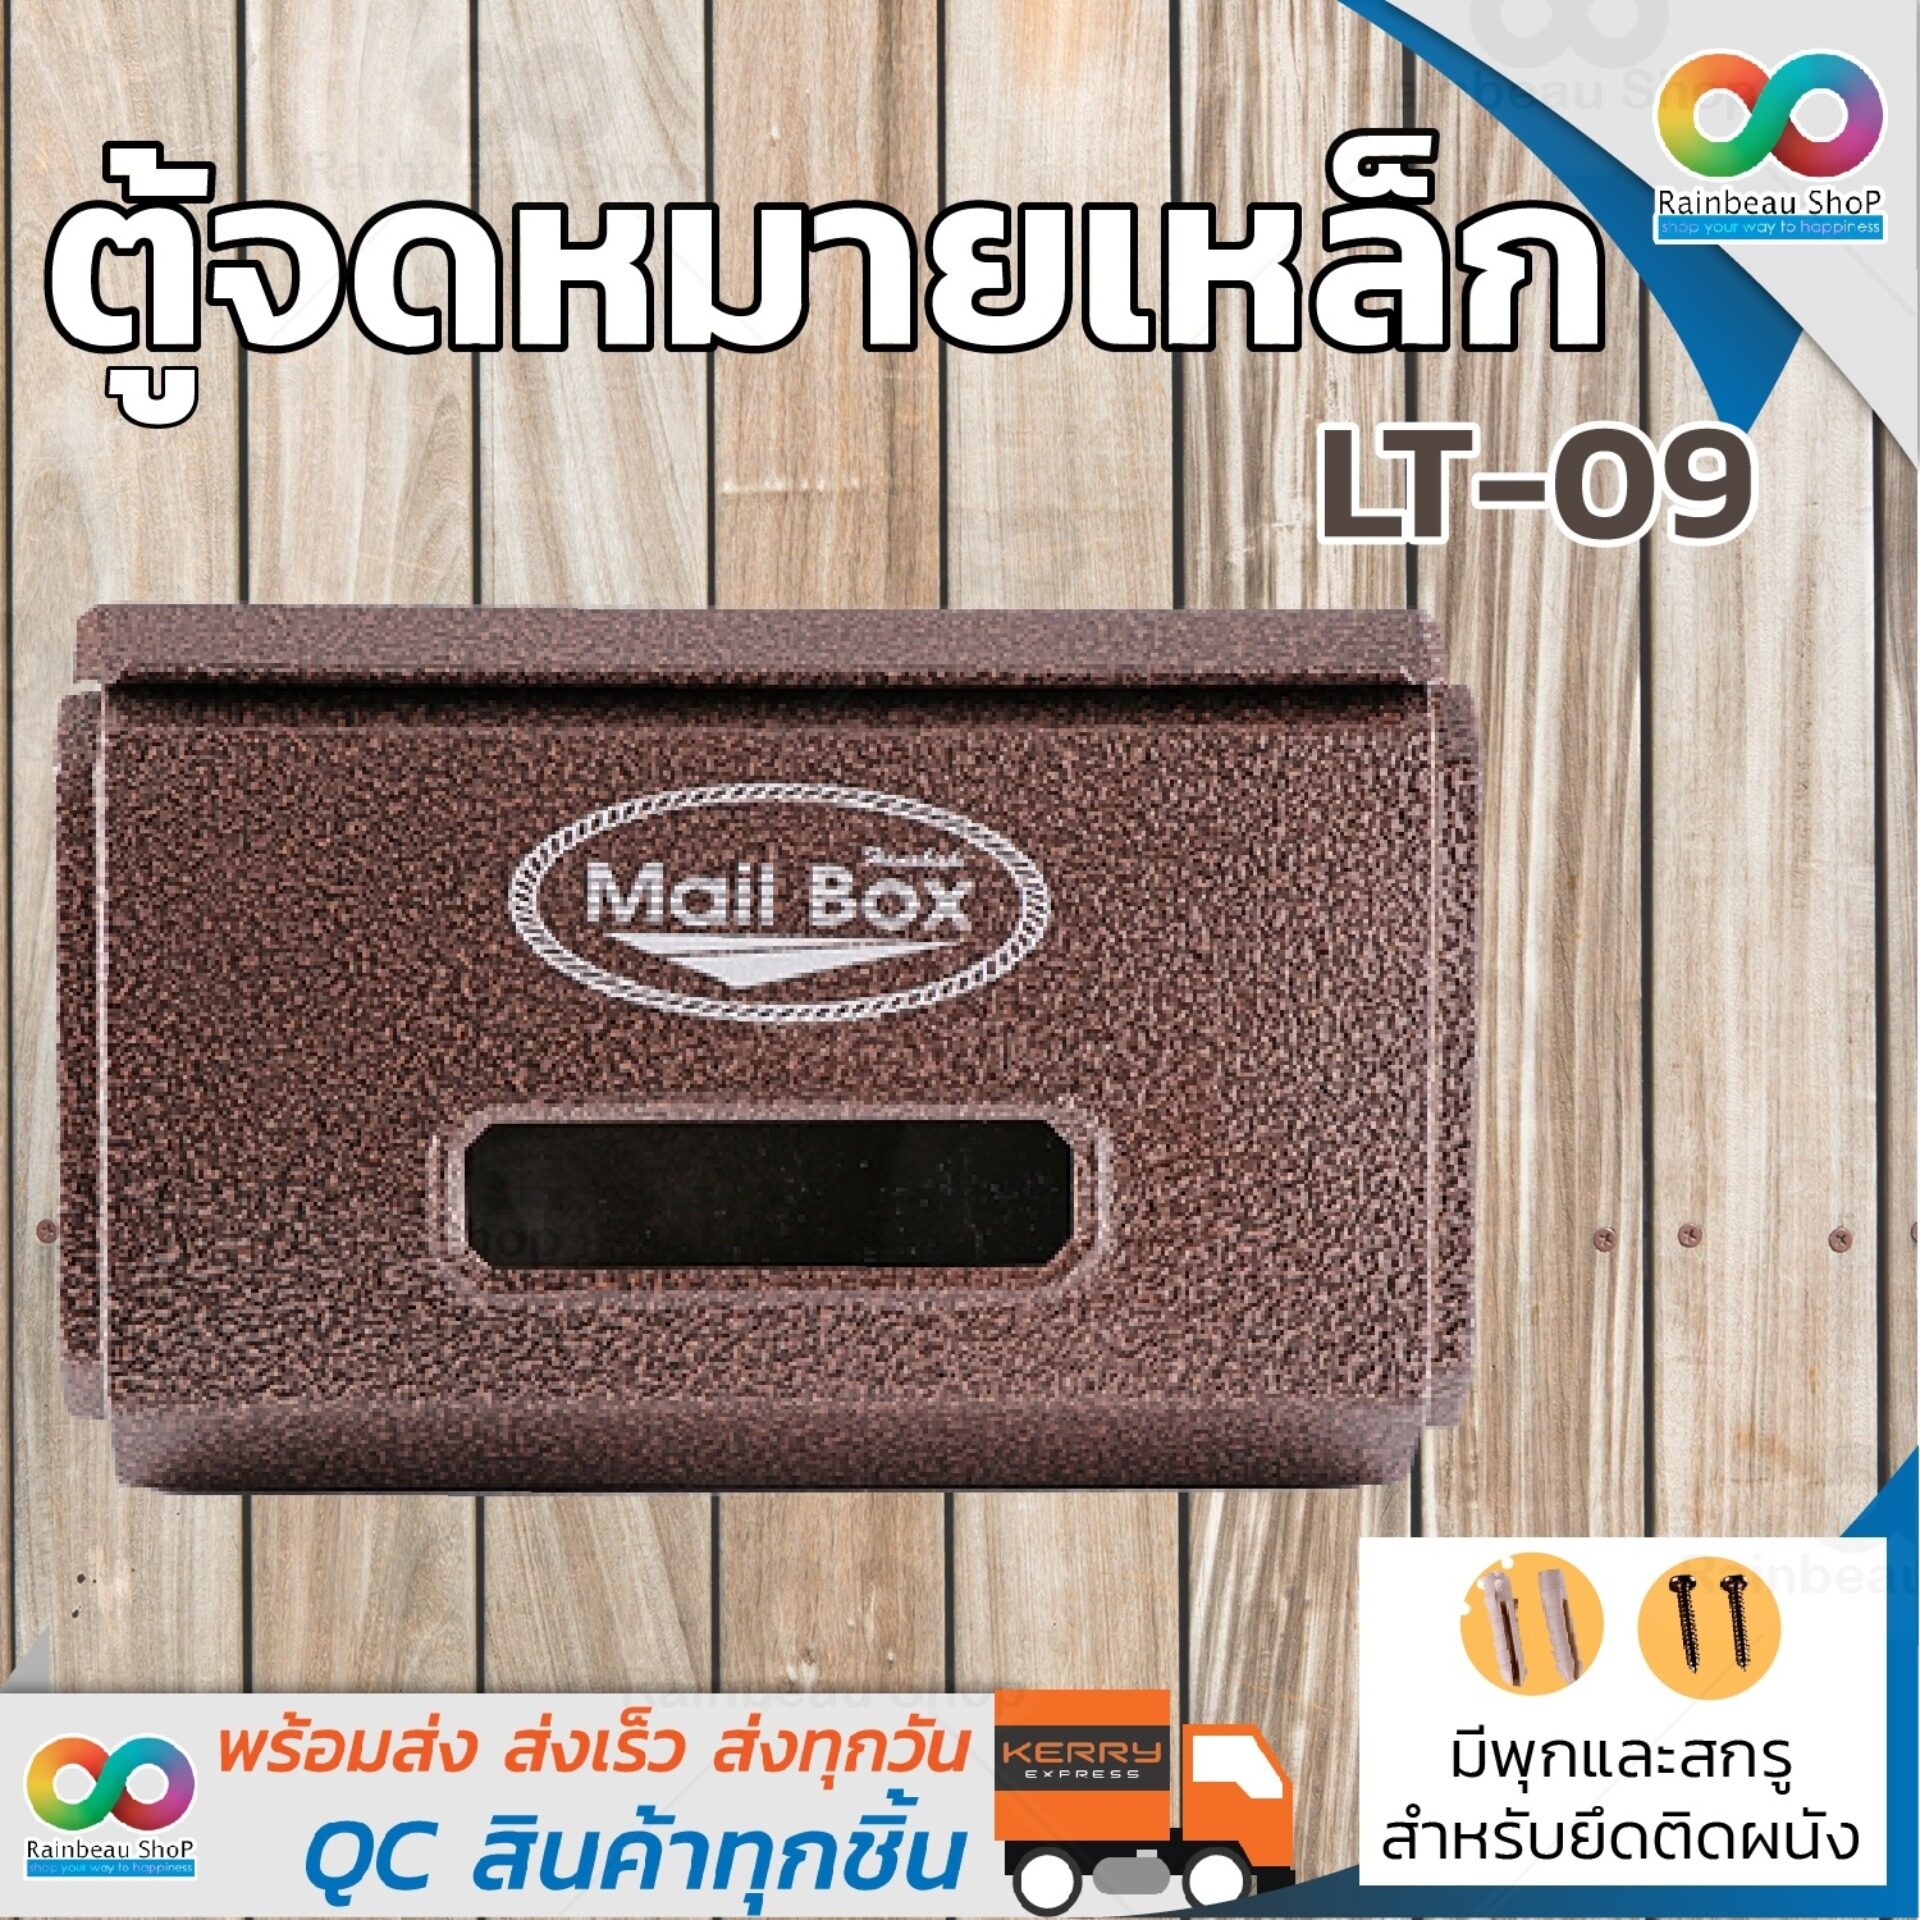 RAINBEAU ตู้จดหมาย กล่องใส่จดหมาย กล่องจดหมาย HANABISHI LT-09 ตู้จดหมายเหล็ก ตู้รับจดหมาย ตู้ไปรษณีย์ พ่นอัลลอยด์ มีกุญแจล็อคได้ แข็งแรง ทนทาน